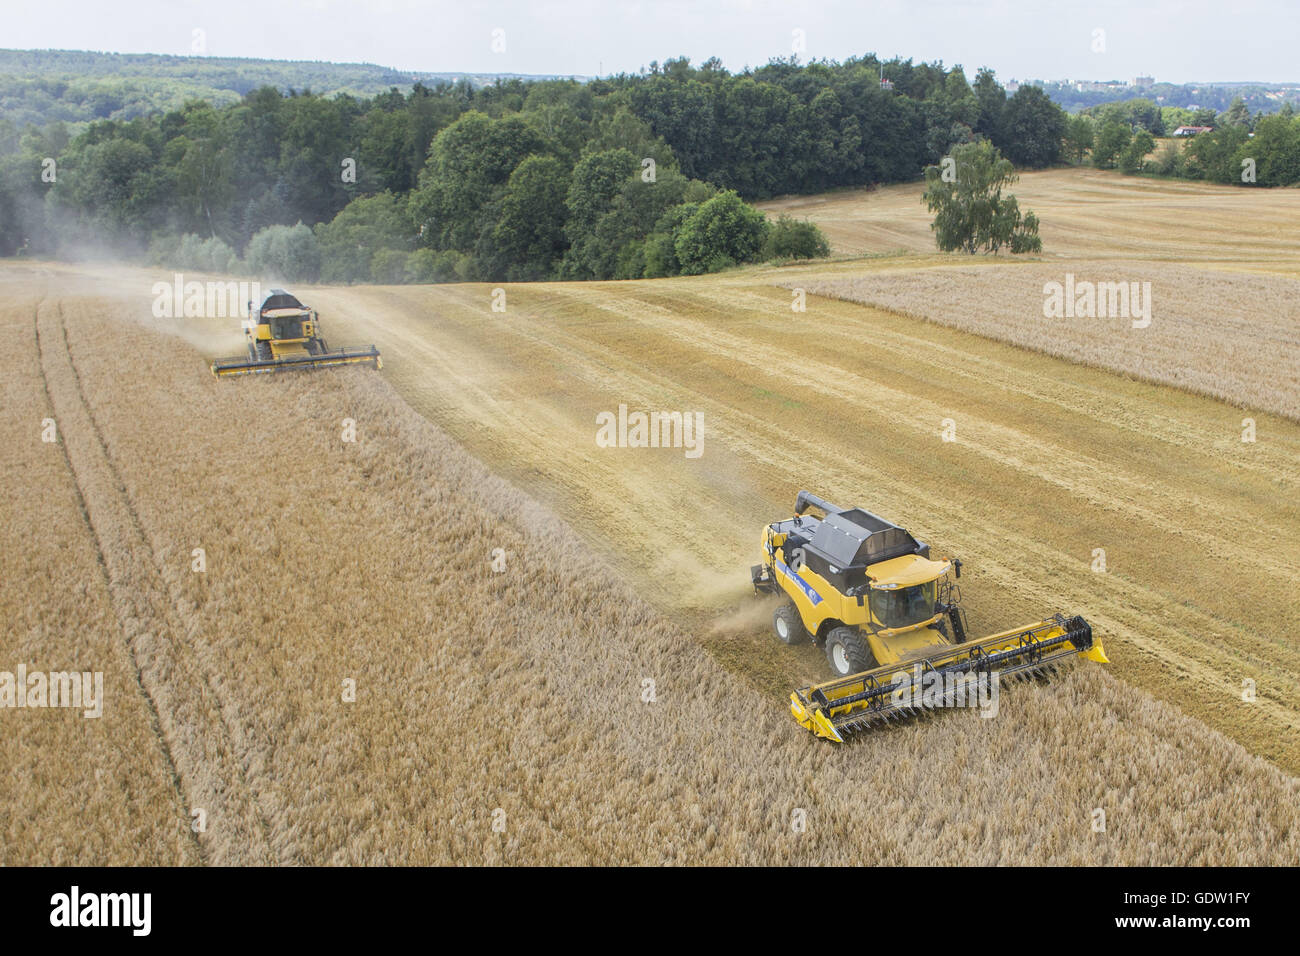 Combine harvesters Stock Photo